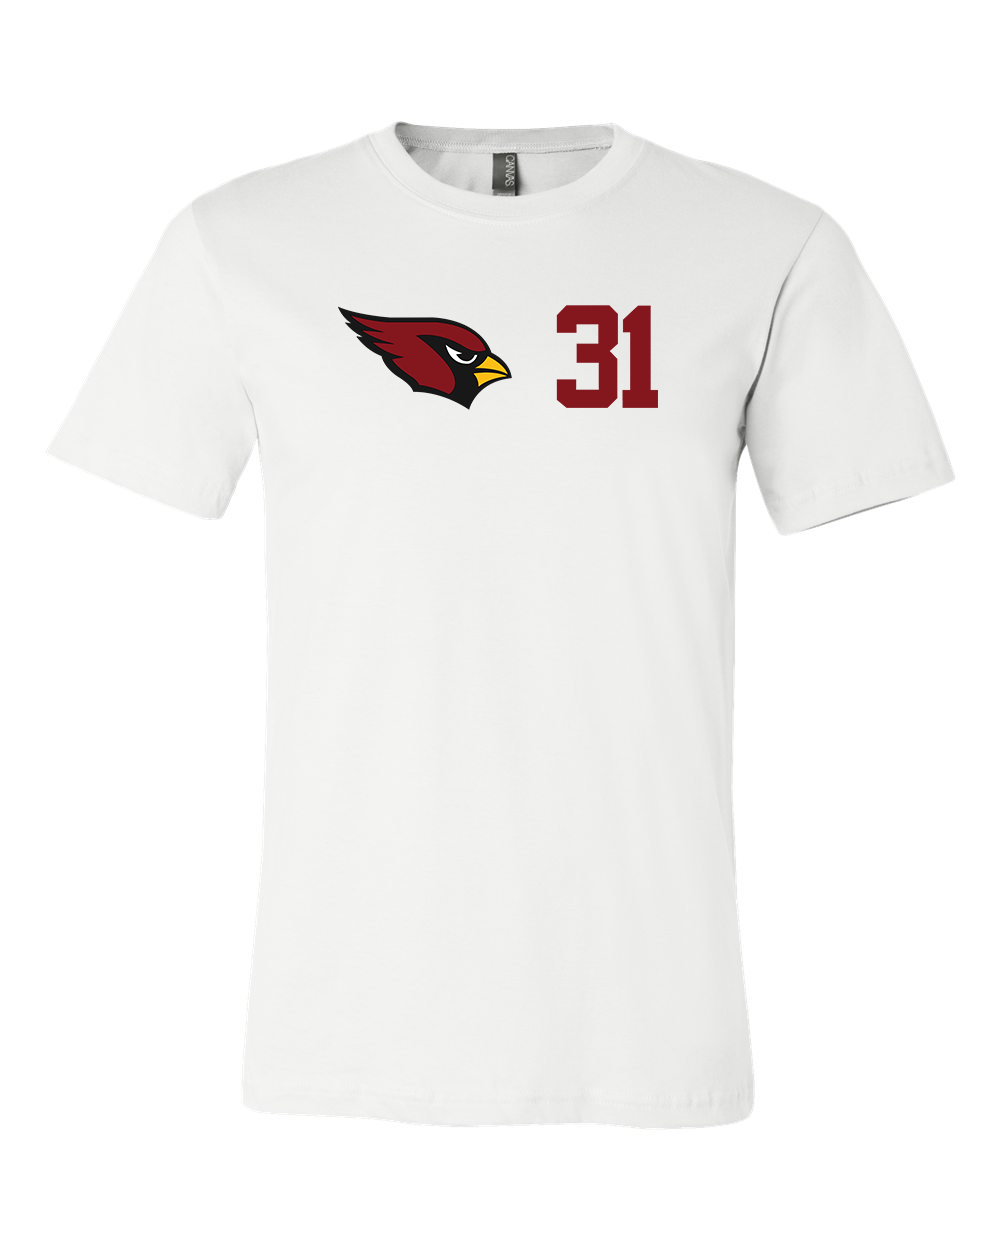 David Johnson #31 Arizona Cardinals Jersey player shirt